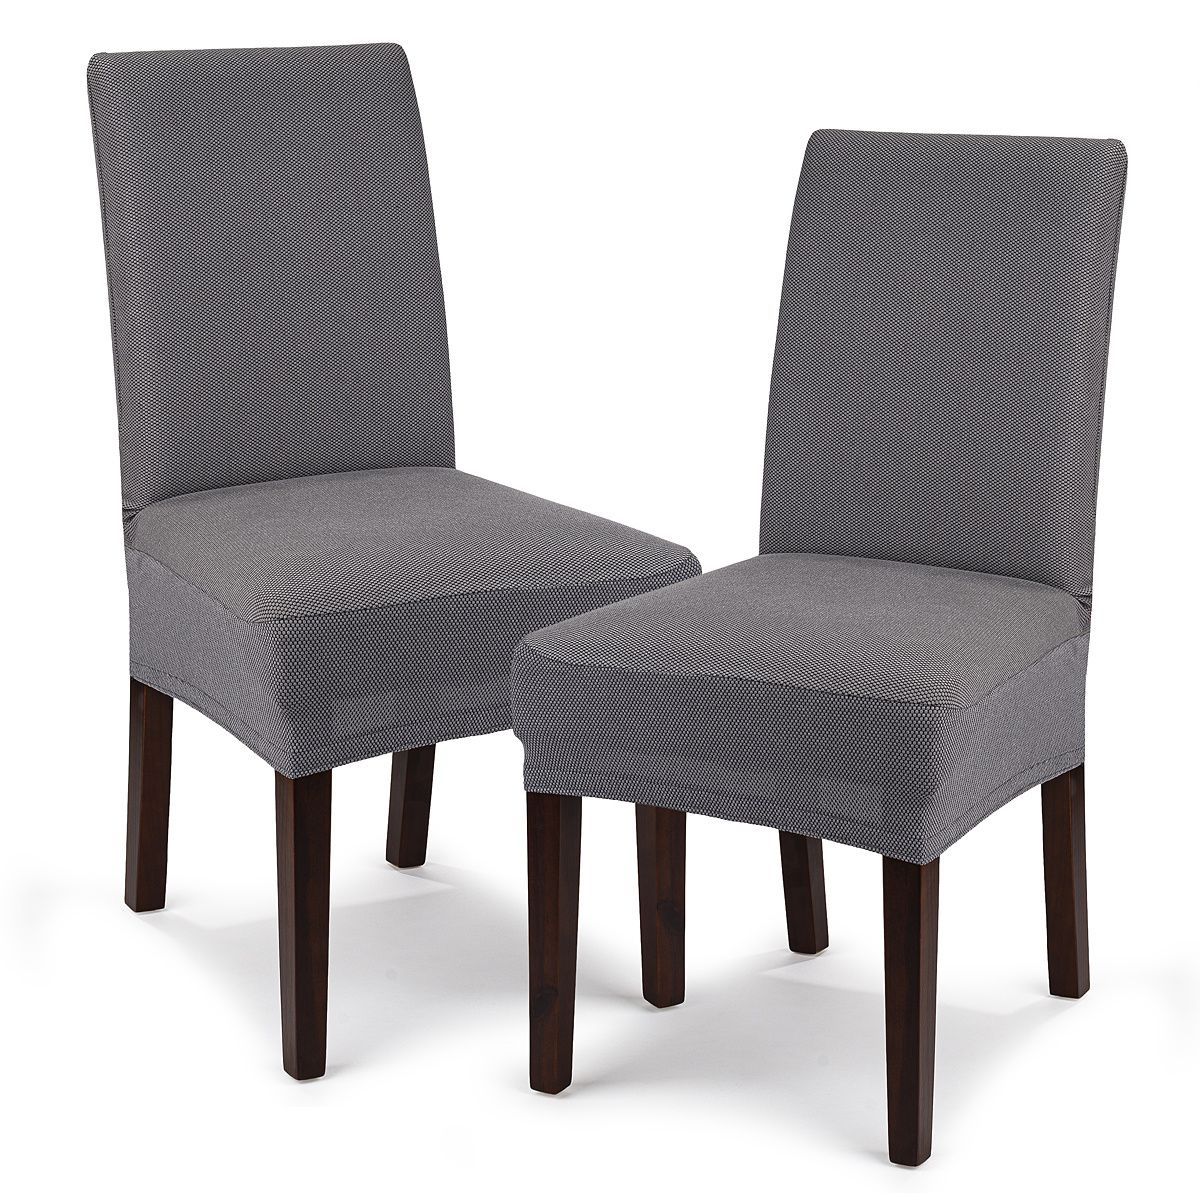 4Home Multielastický potah na židli Comfort šedá, 40 - 50 cm, sada 2 ks - 4home.cz